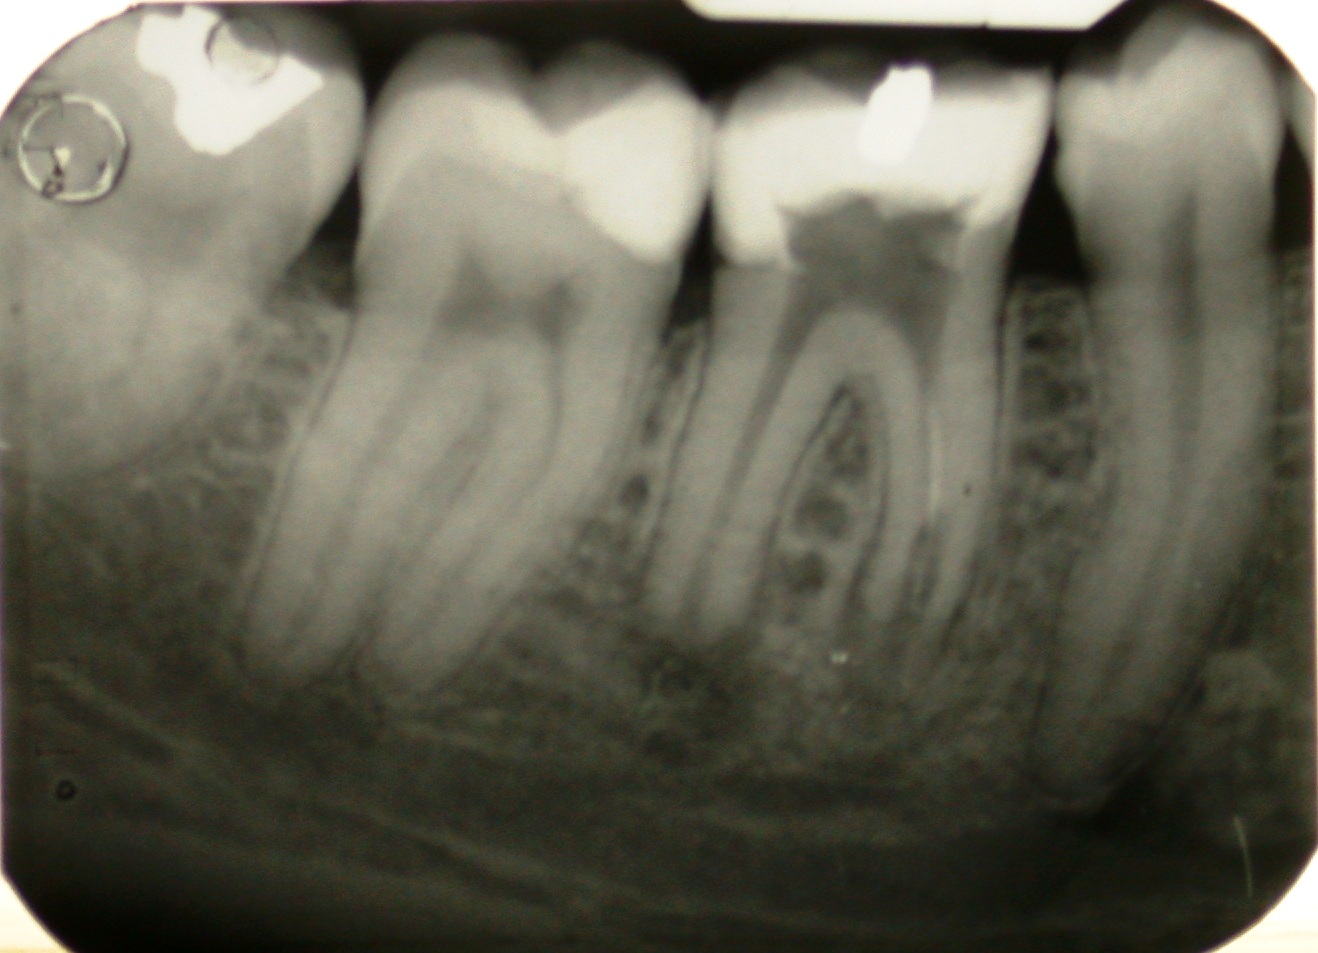 Ritrattamento endodontico di molare inferiore con lesione periapicale, rizolisi apicale e riassorbimento interno.